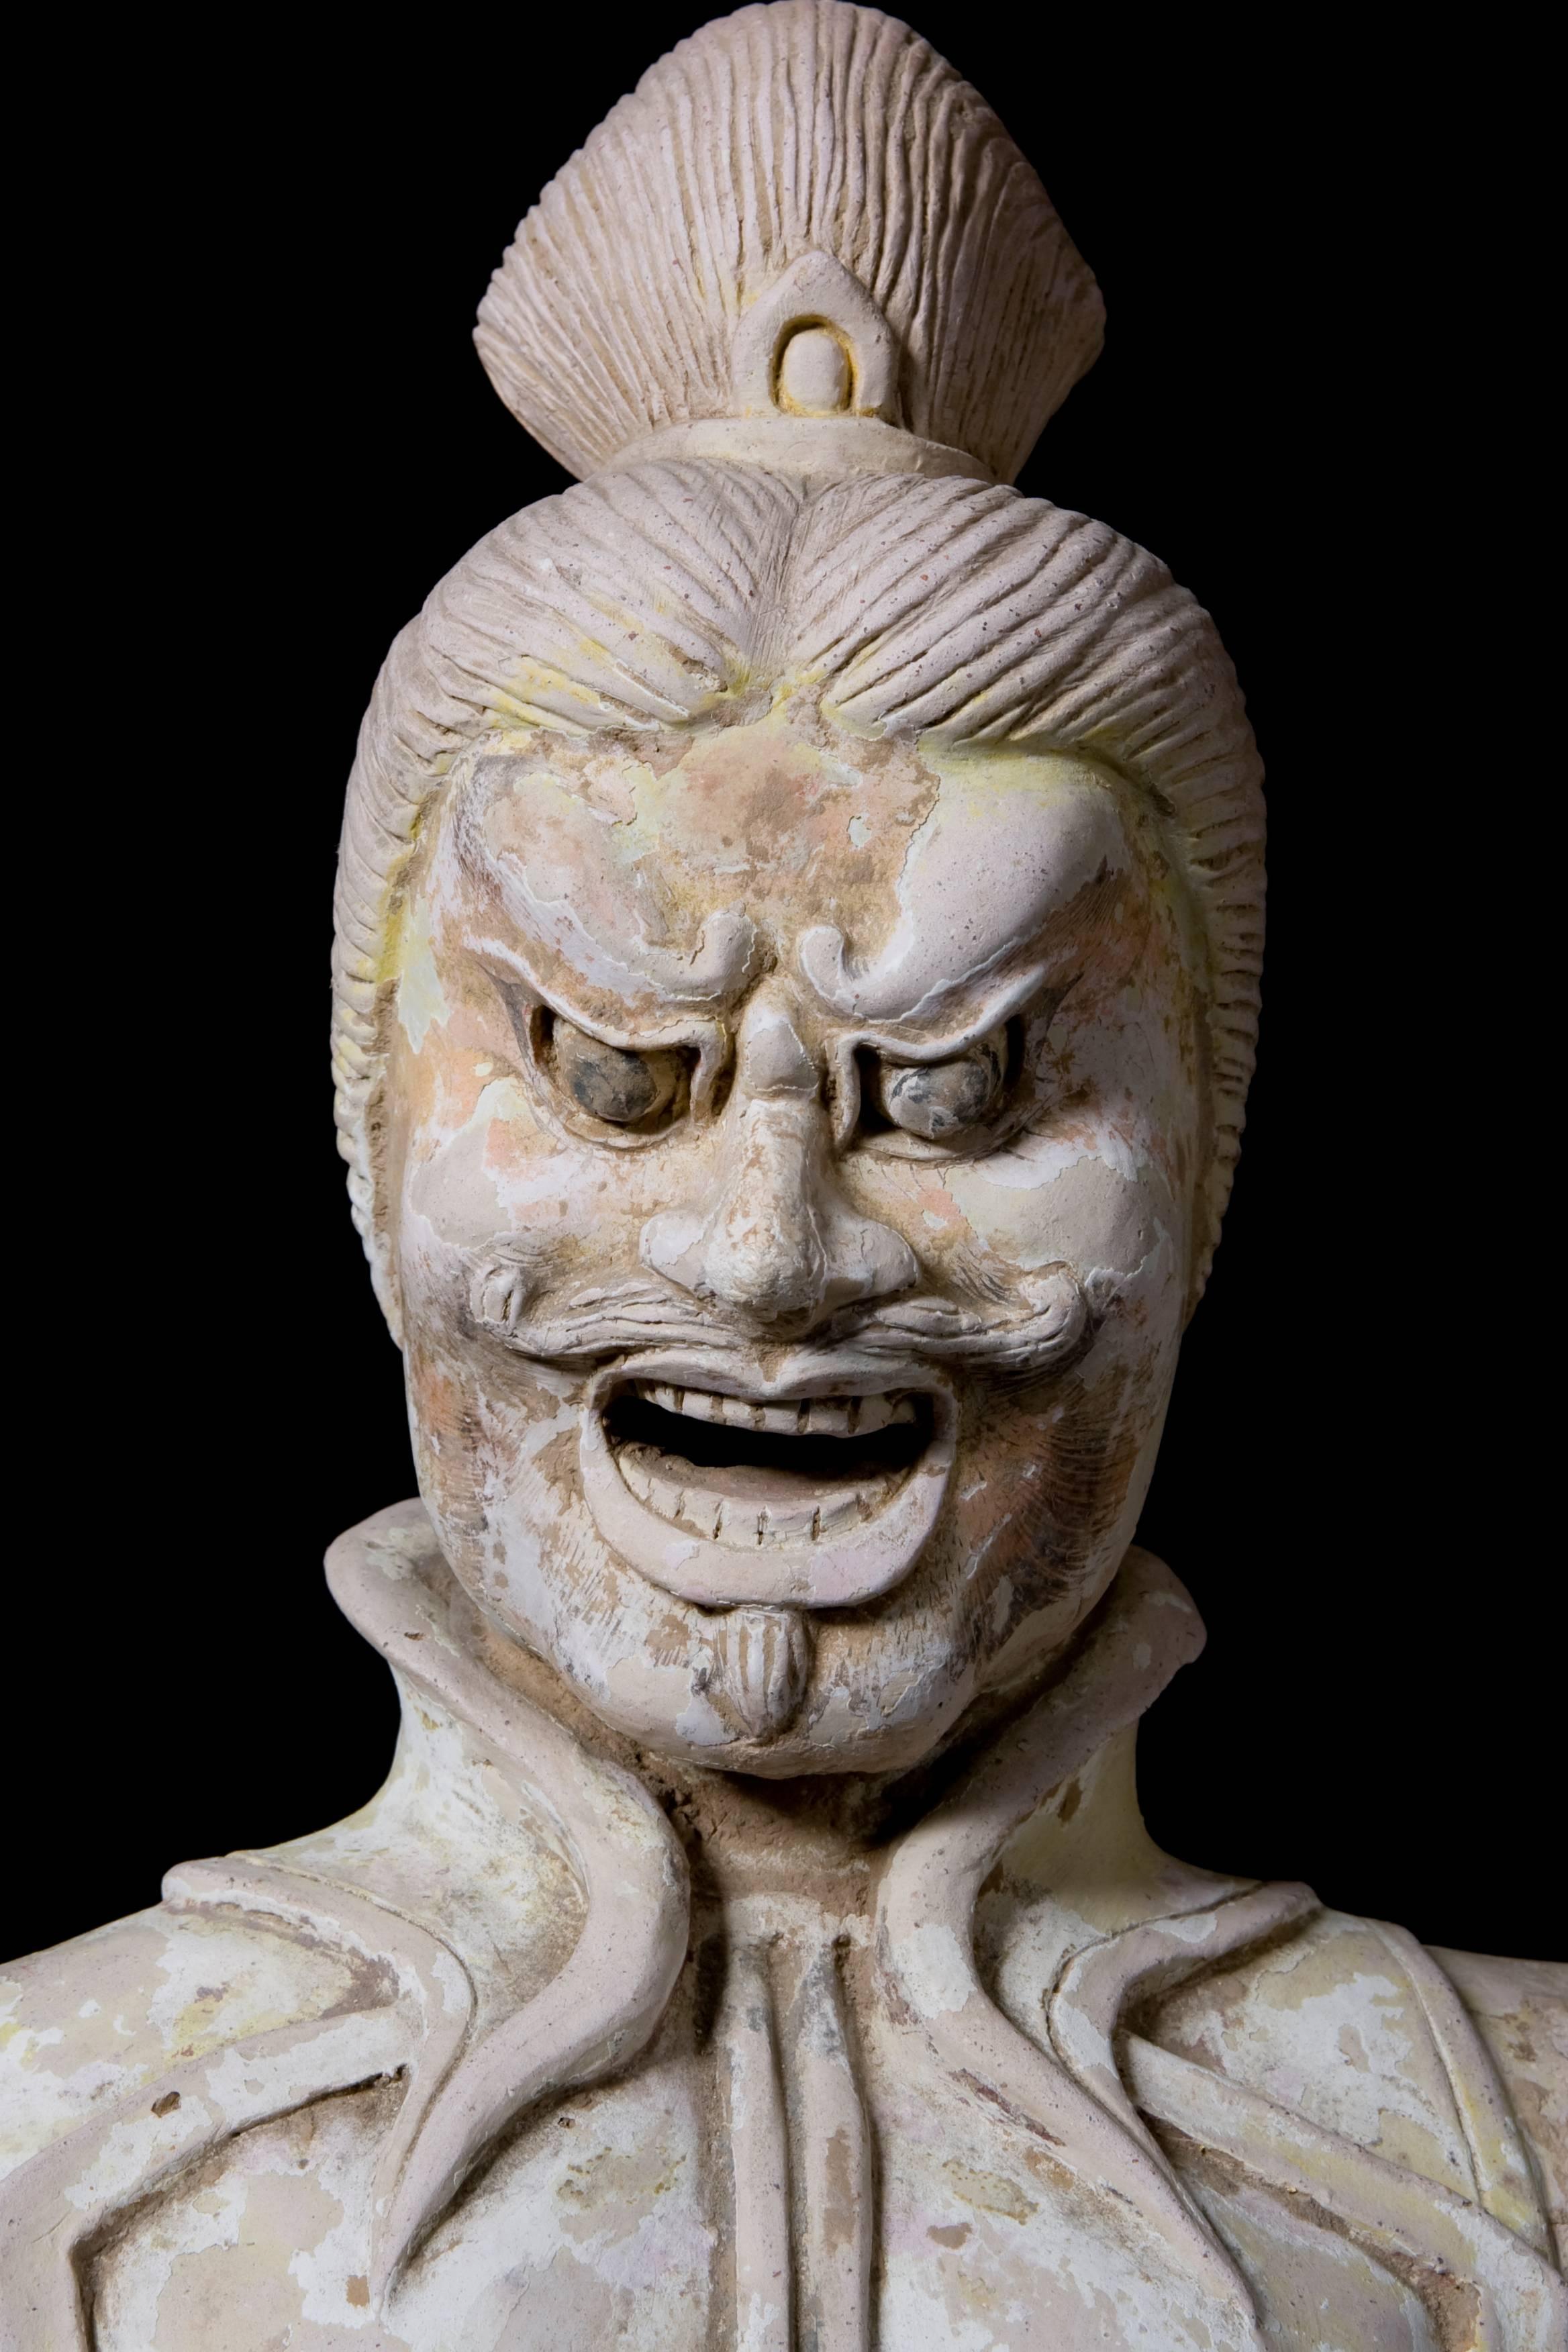 Imposante Lokapala-Figur in bedrohlicher Pose. Terrakotta mit Spuren von alten Farbpigmenten. China, Tang-Dynastie (618-907 n. Chr.) Museumsstück.

Lokapalas sind nach der buddhistischen Lehre Wächter für Buddha und seine Tempel und schützen sie vor